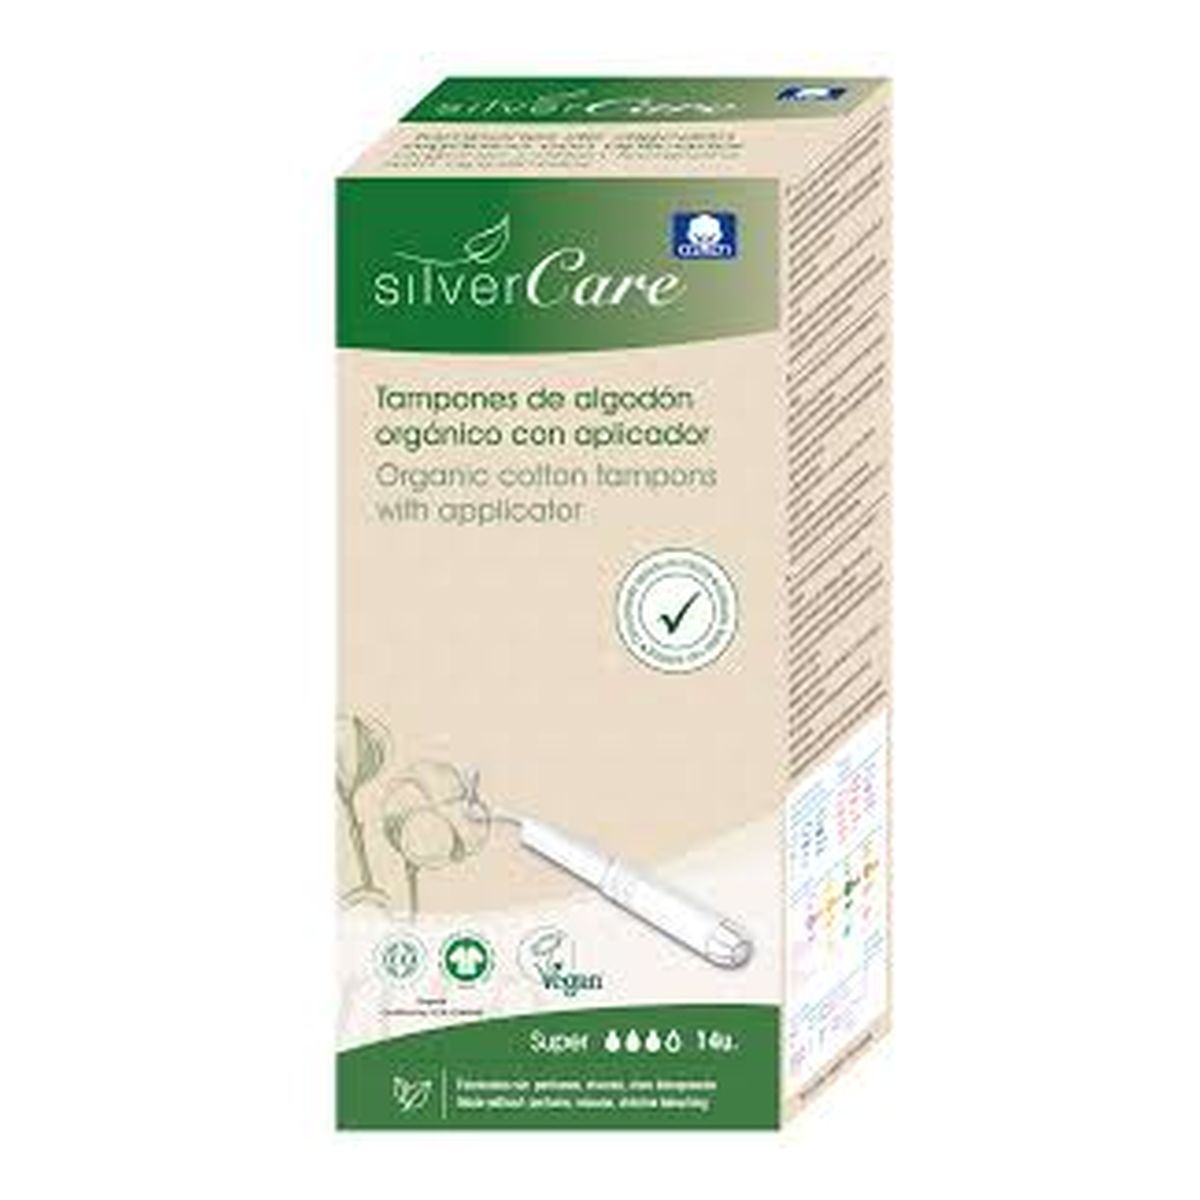 MASMI Silver Care Organiczne bawełniane tampony Super z aplikatorem 100% bawełny organicznej 14szt